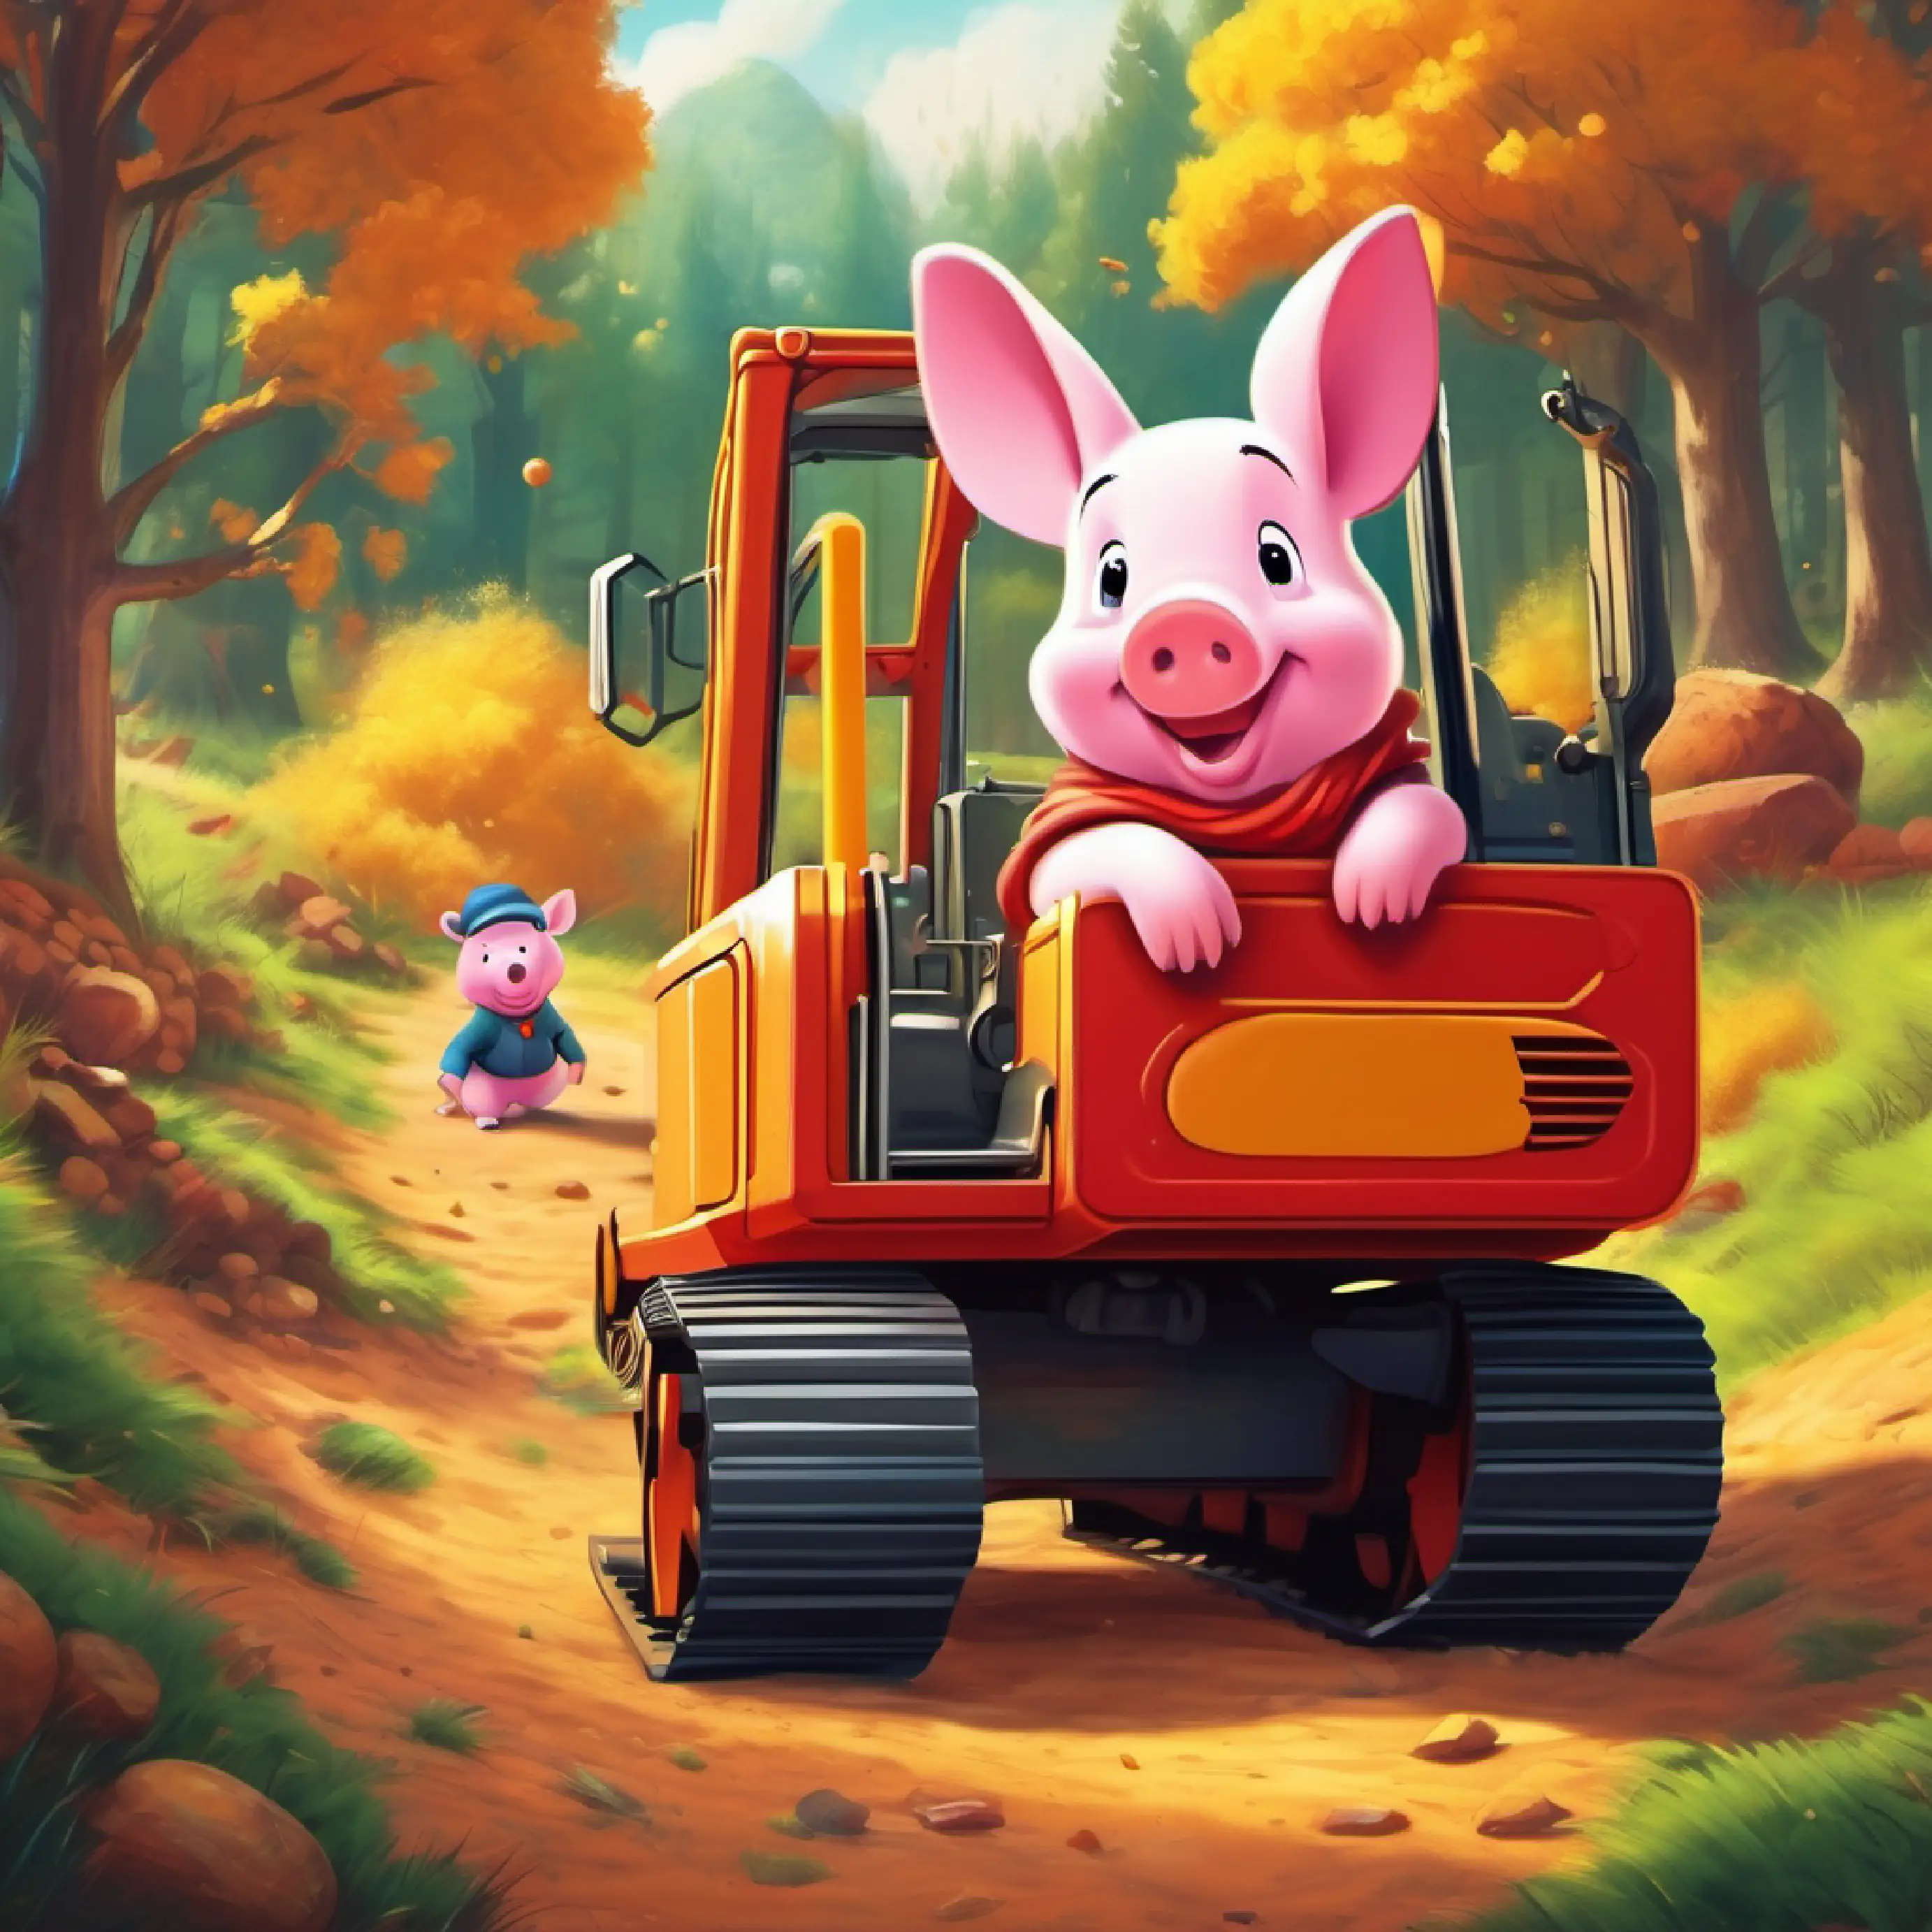 Piglet wants to help make Excavator happy.